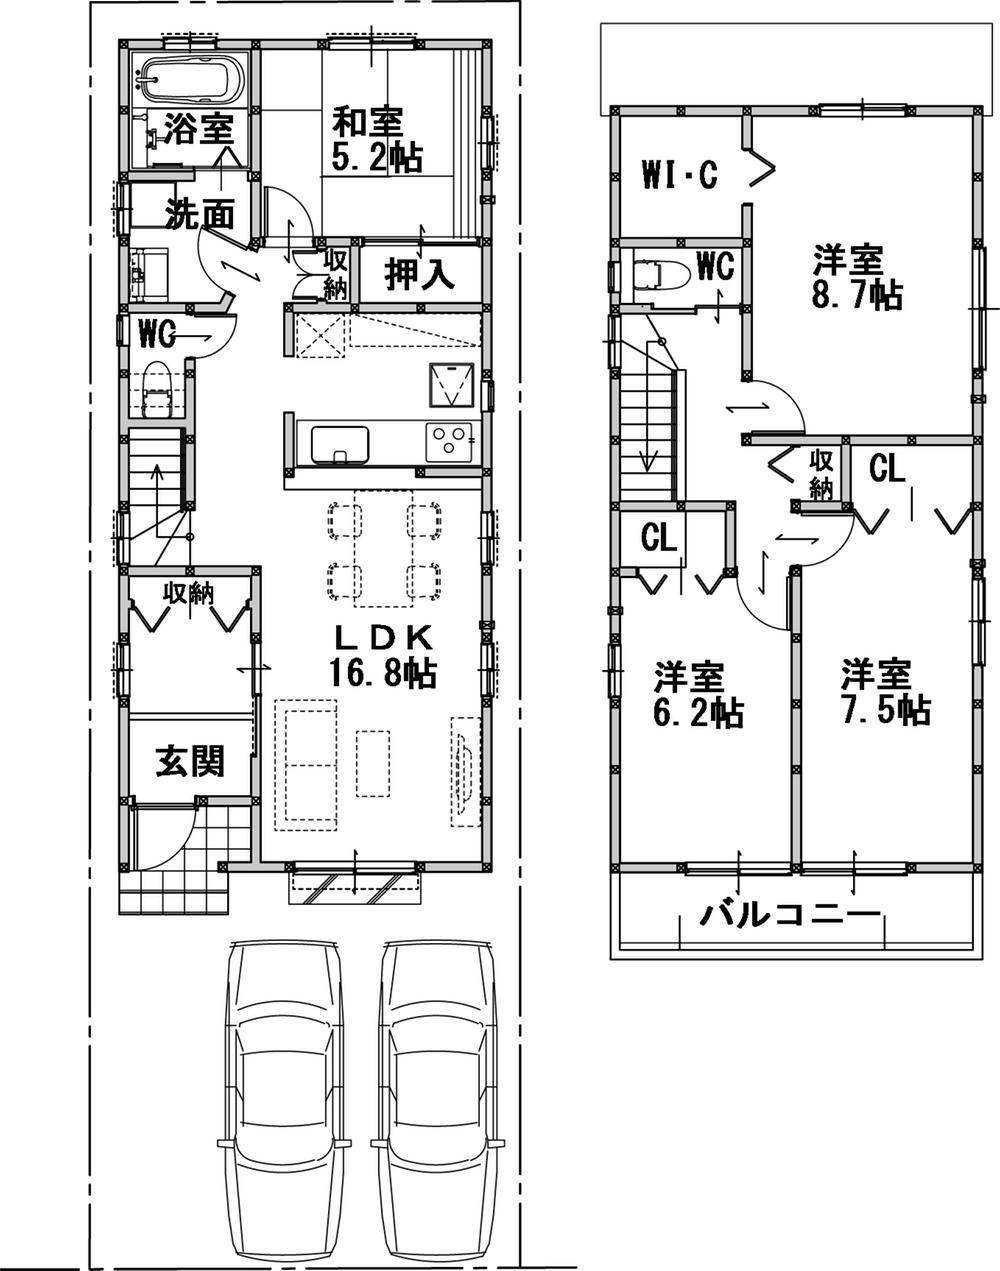 Floor plan. (South Building), Price 44,800,000 yen, 4LDK, Land area 103.87 sq m , Building area 107.56 sq m